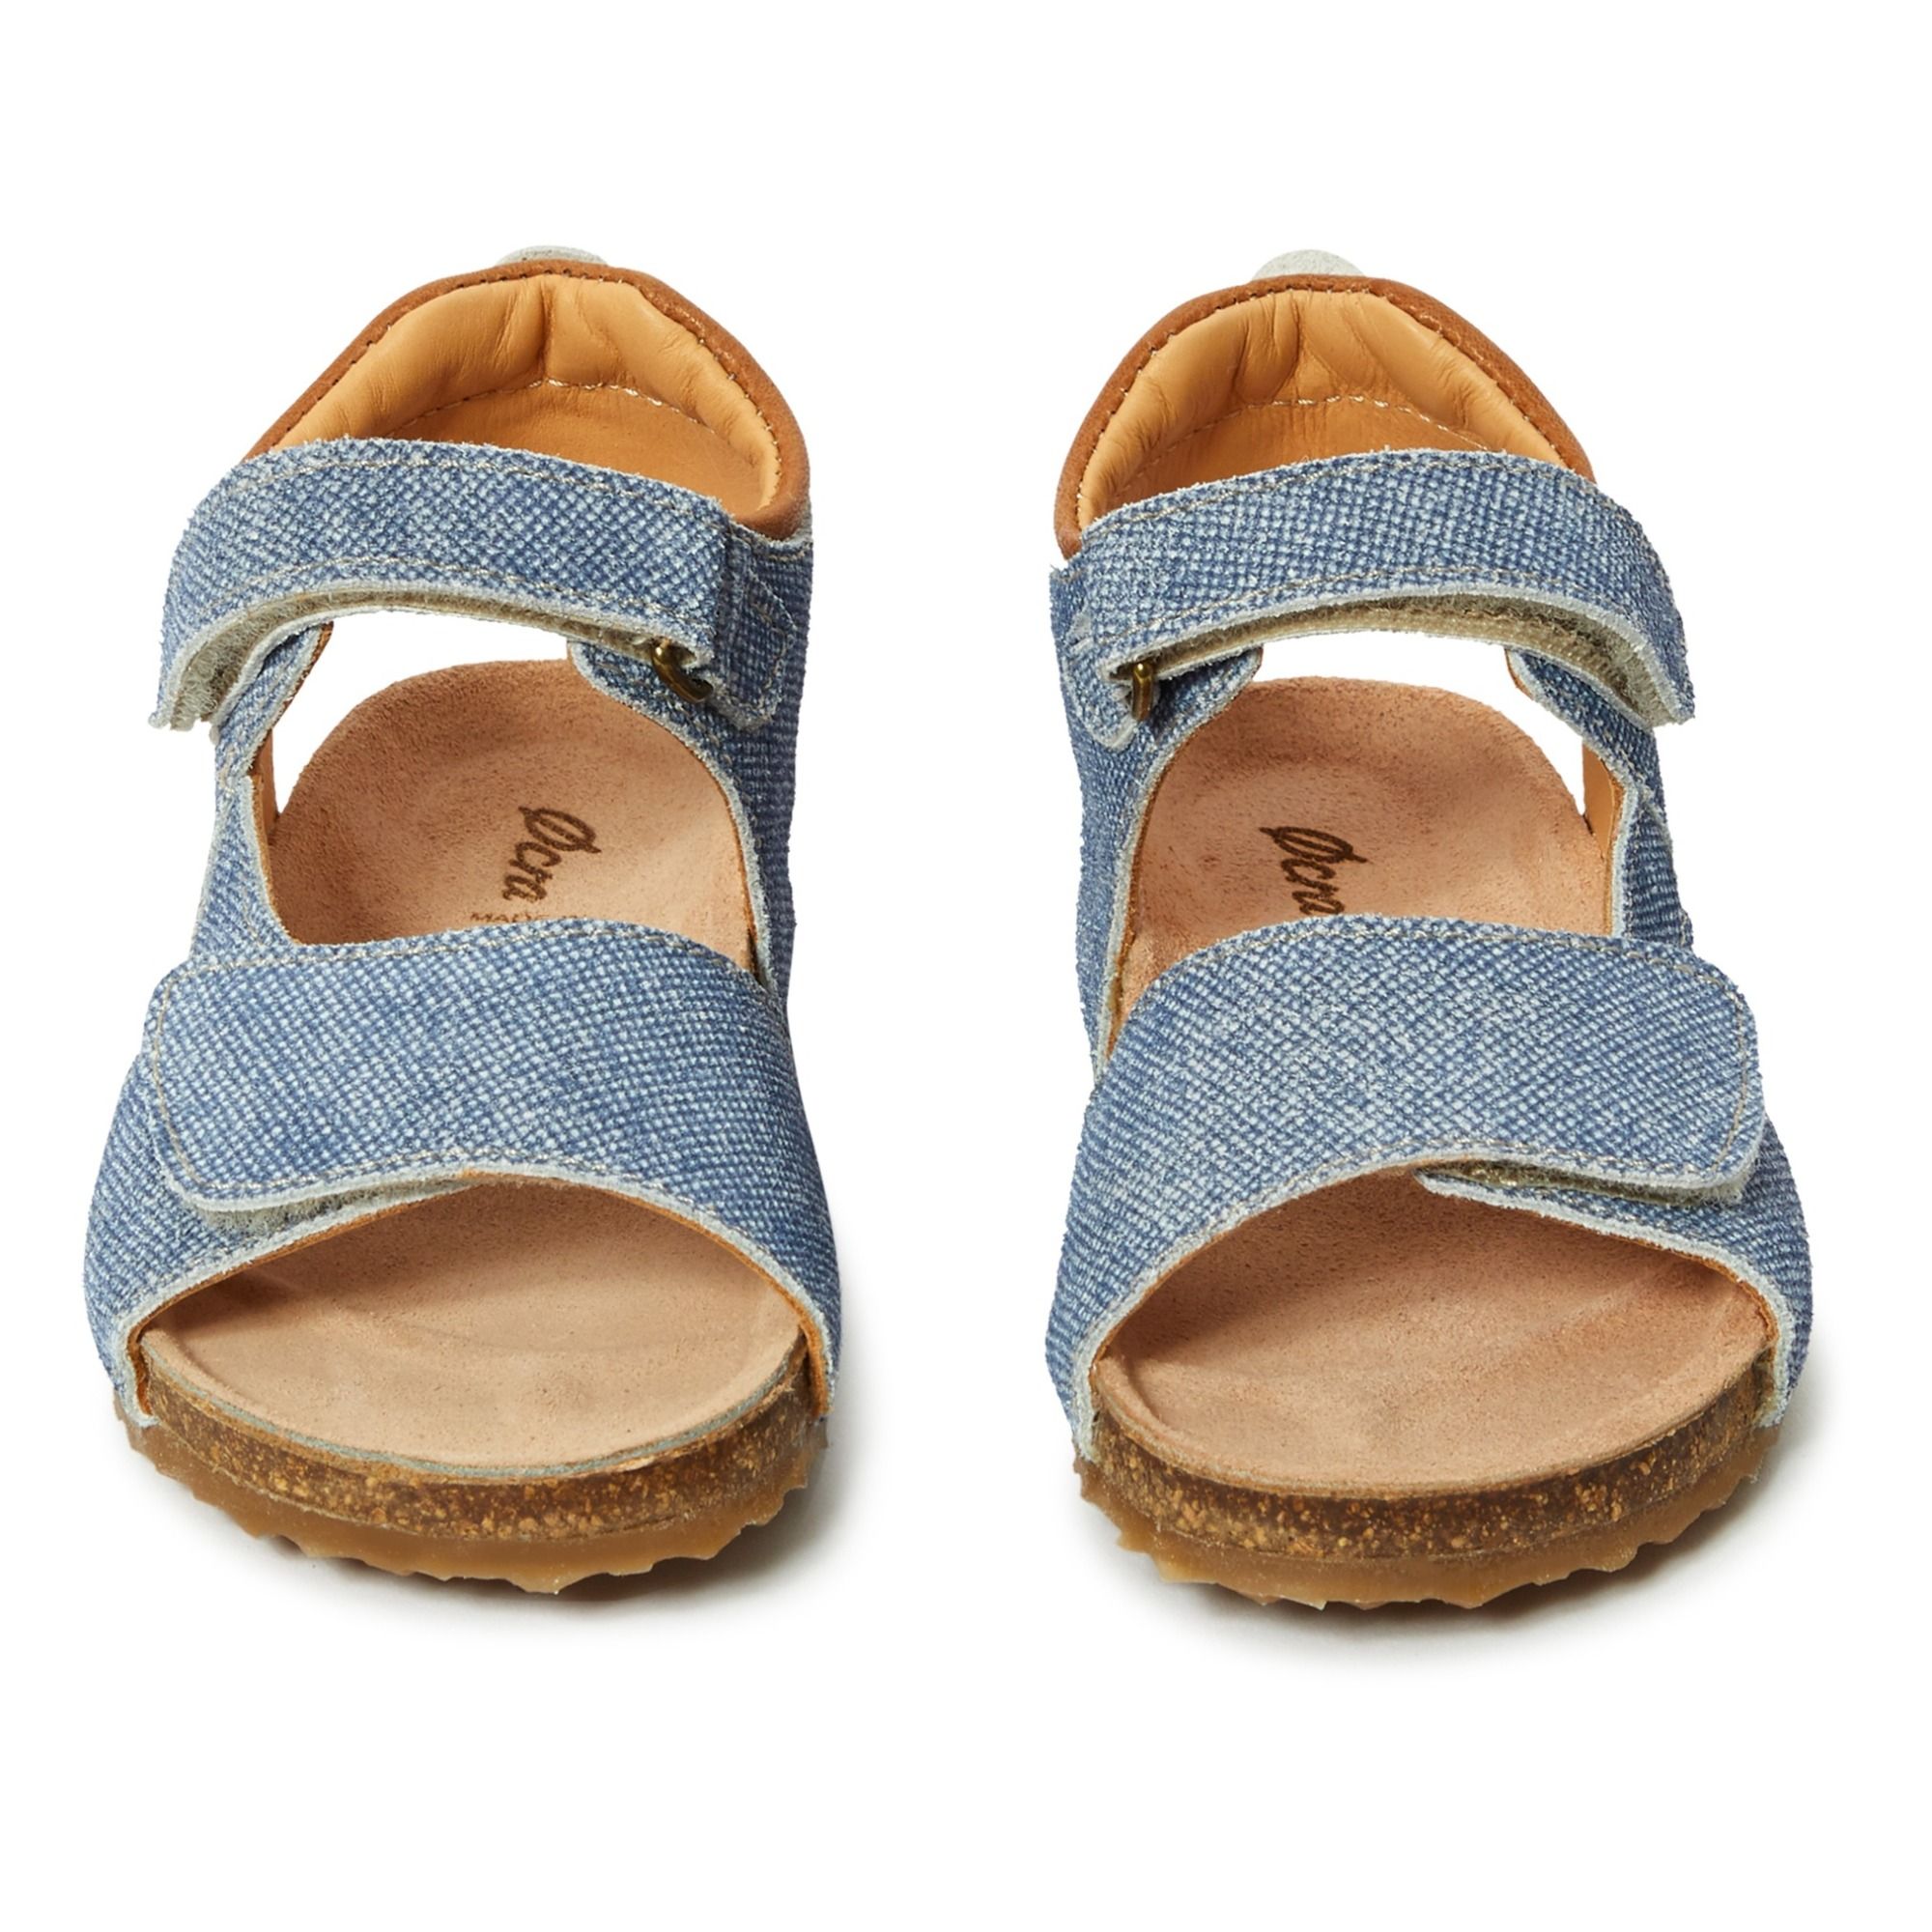  Velcro Sandals  Denim blue Ocra Shoes Baby Children